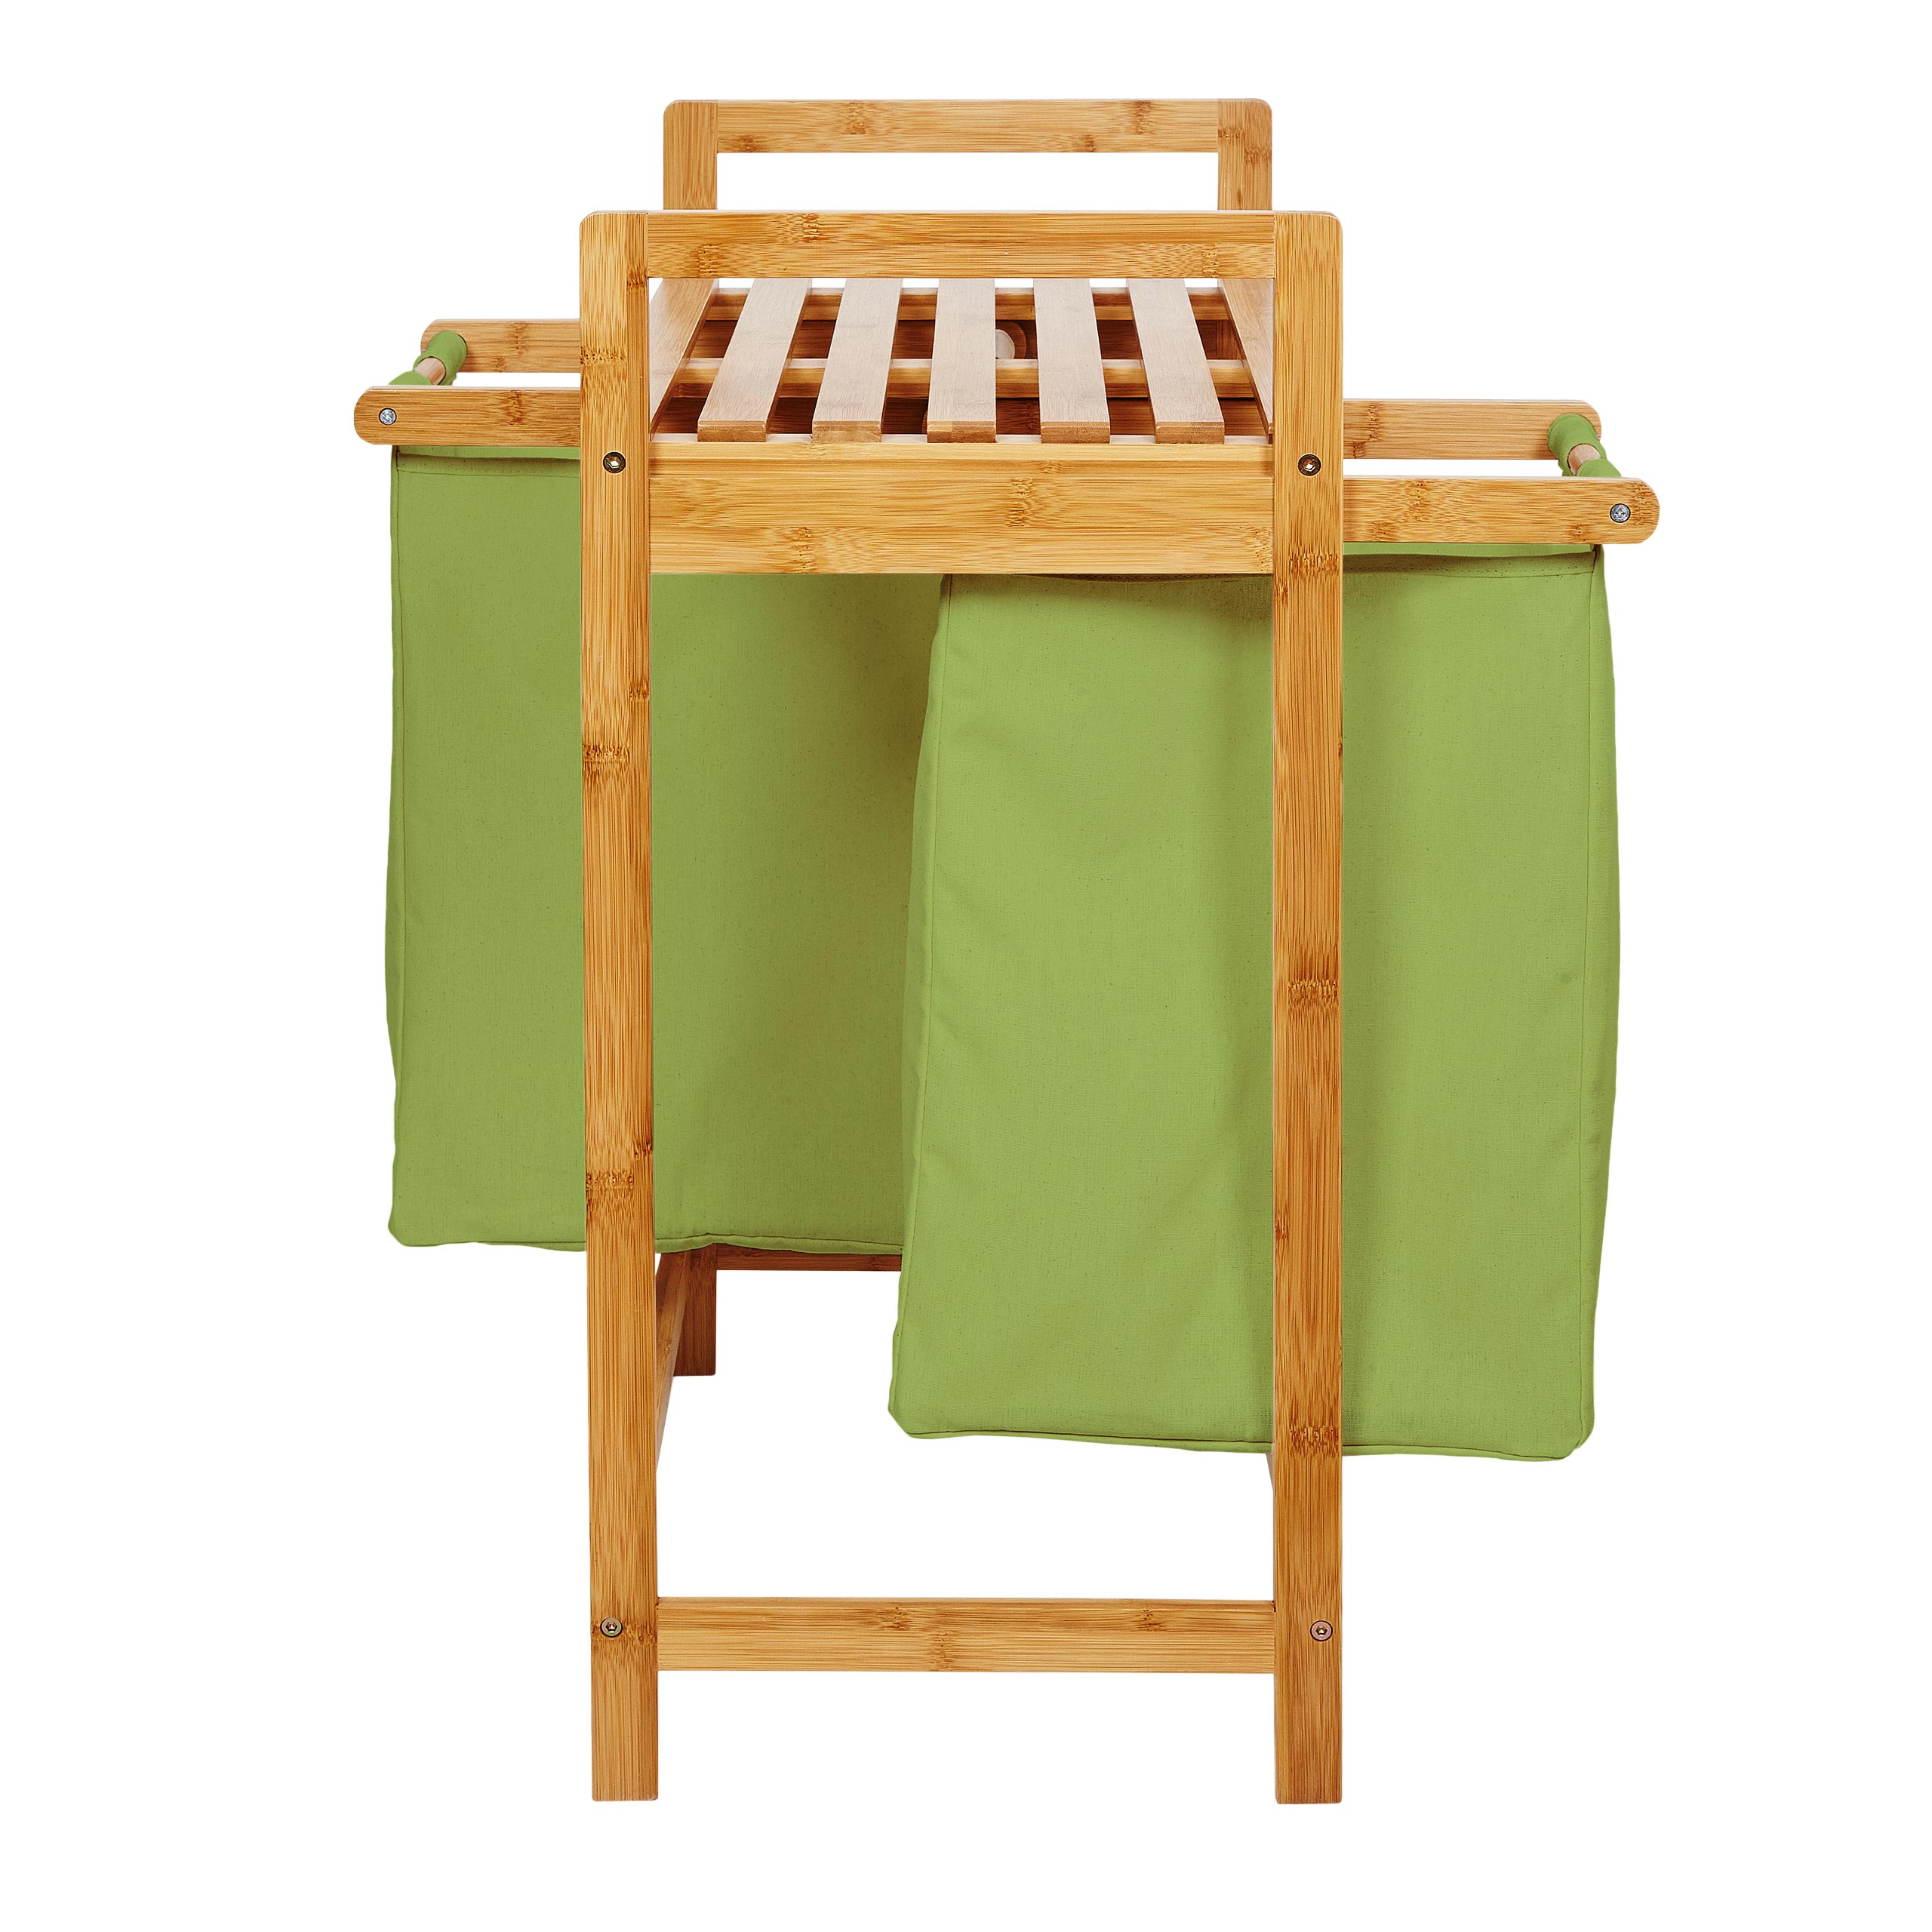 Wäschekorb aus Bambus mit 2 ausziehbaren Wäschesäcken - Größe ca. 73 cm Höhe x 64 cm Breite x 33 cm Tiefe - Farbe Grün